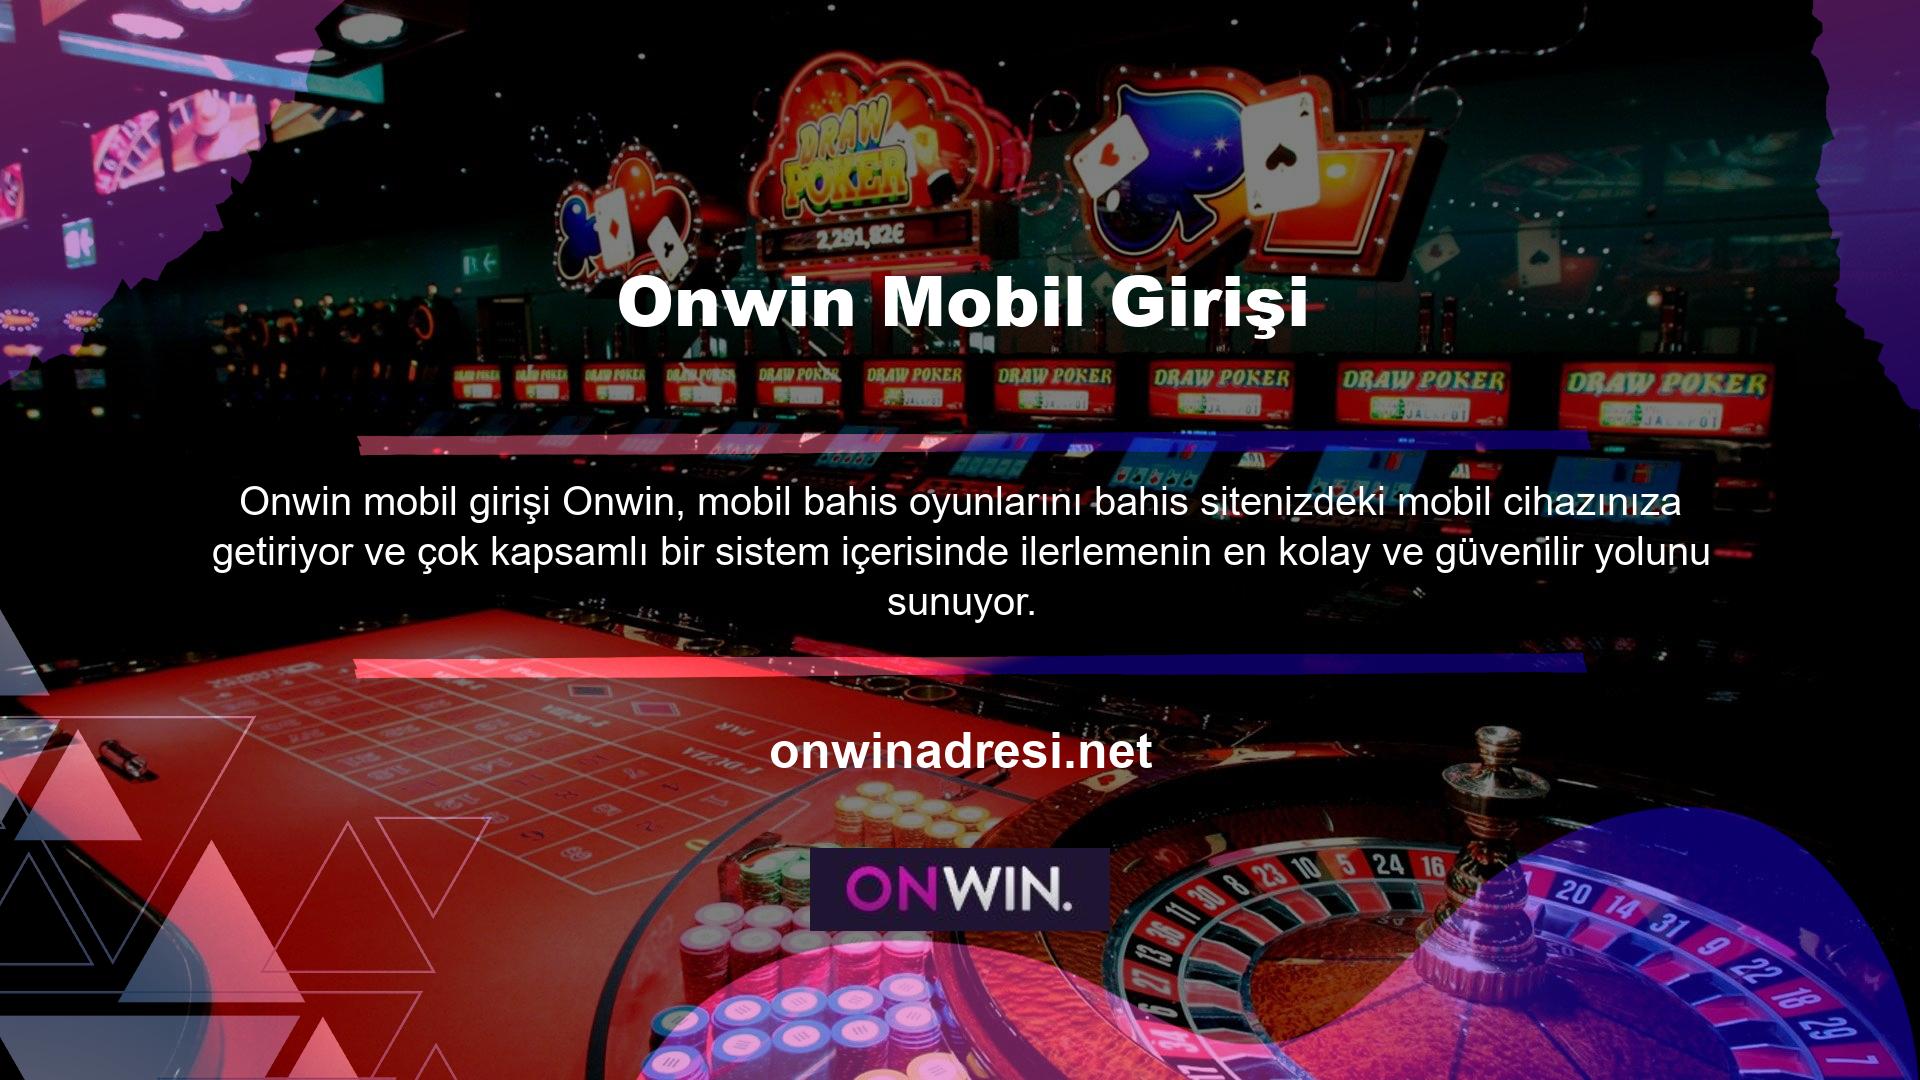 Onwin mobil giriş seçeneğini doğru anlamak ve kullanmak için cep telefonunuzdan siteye giriş yapmalısınız